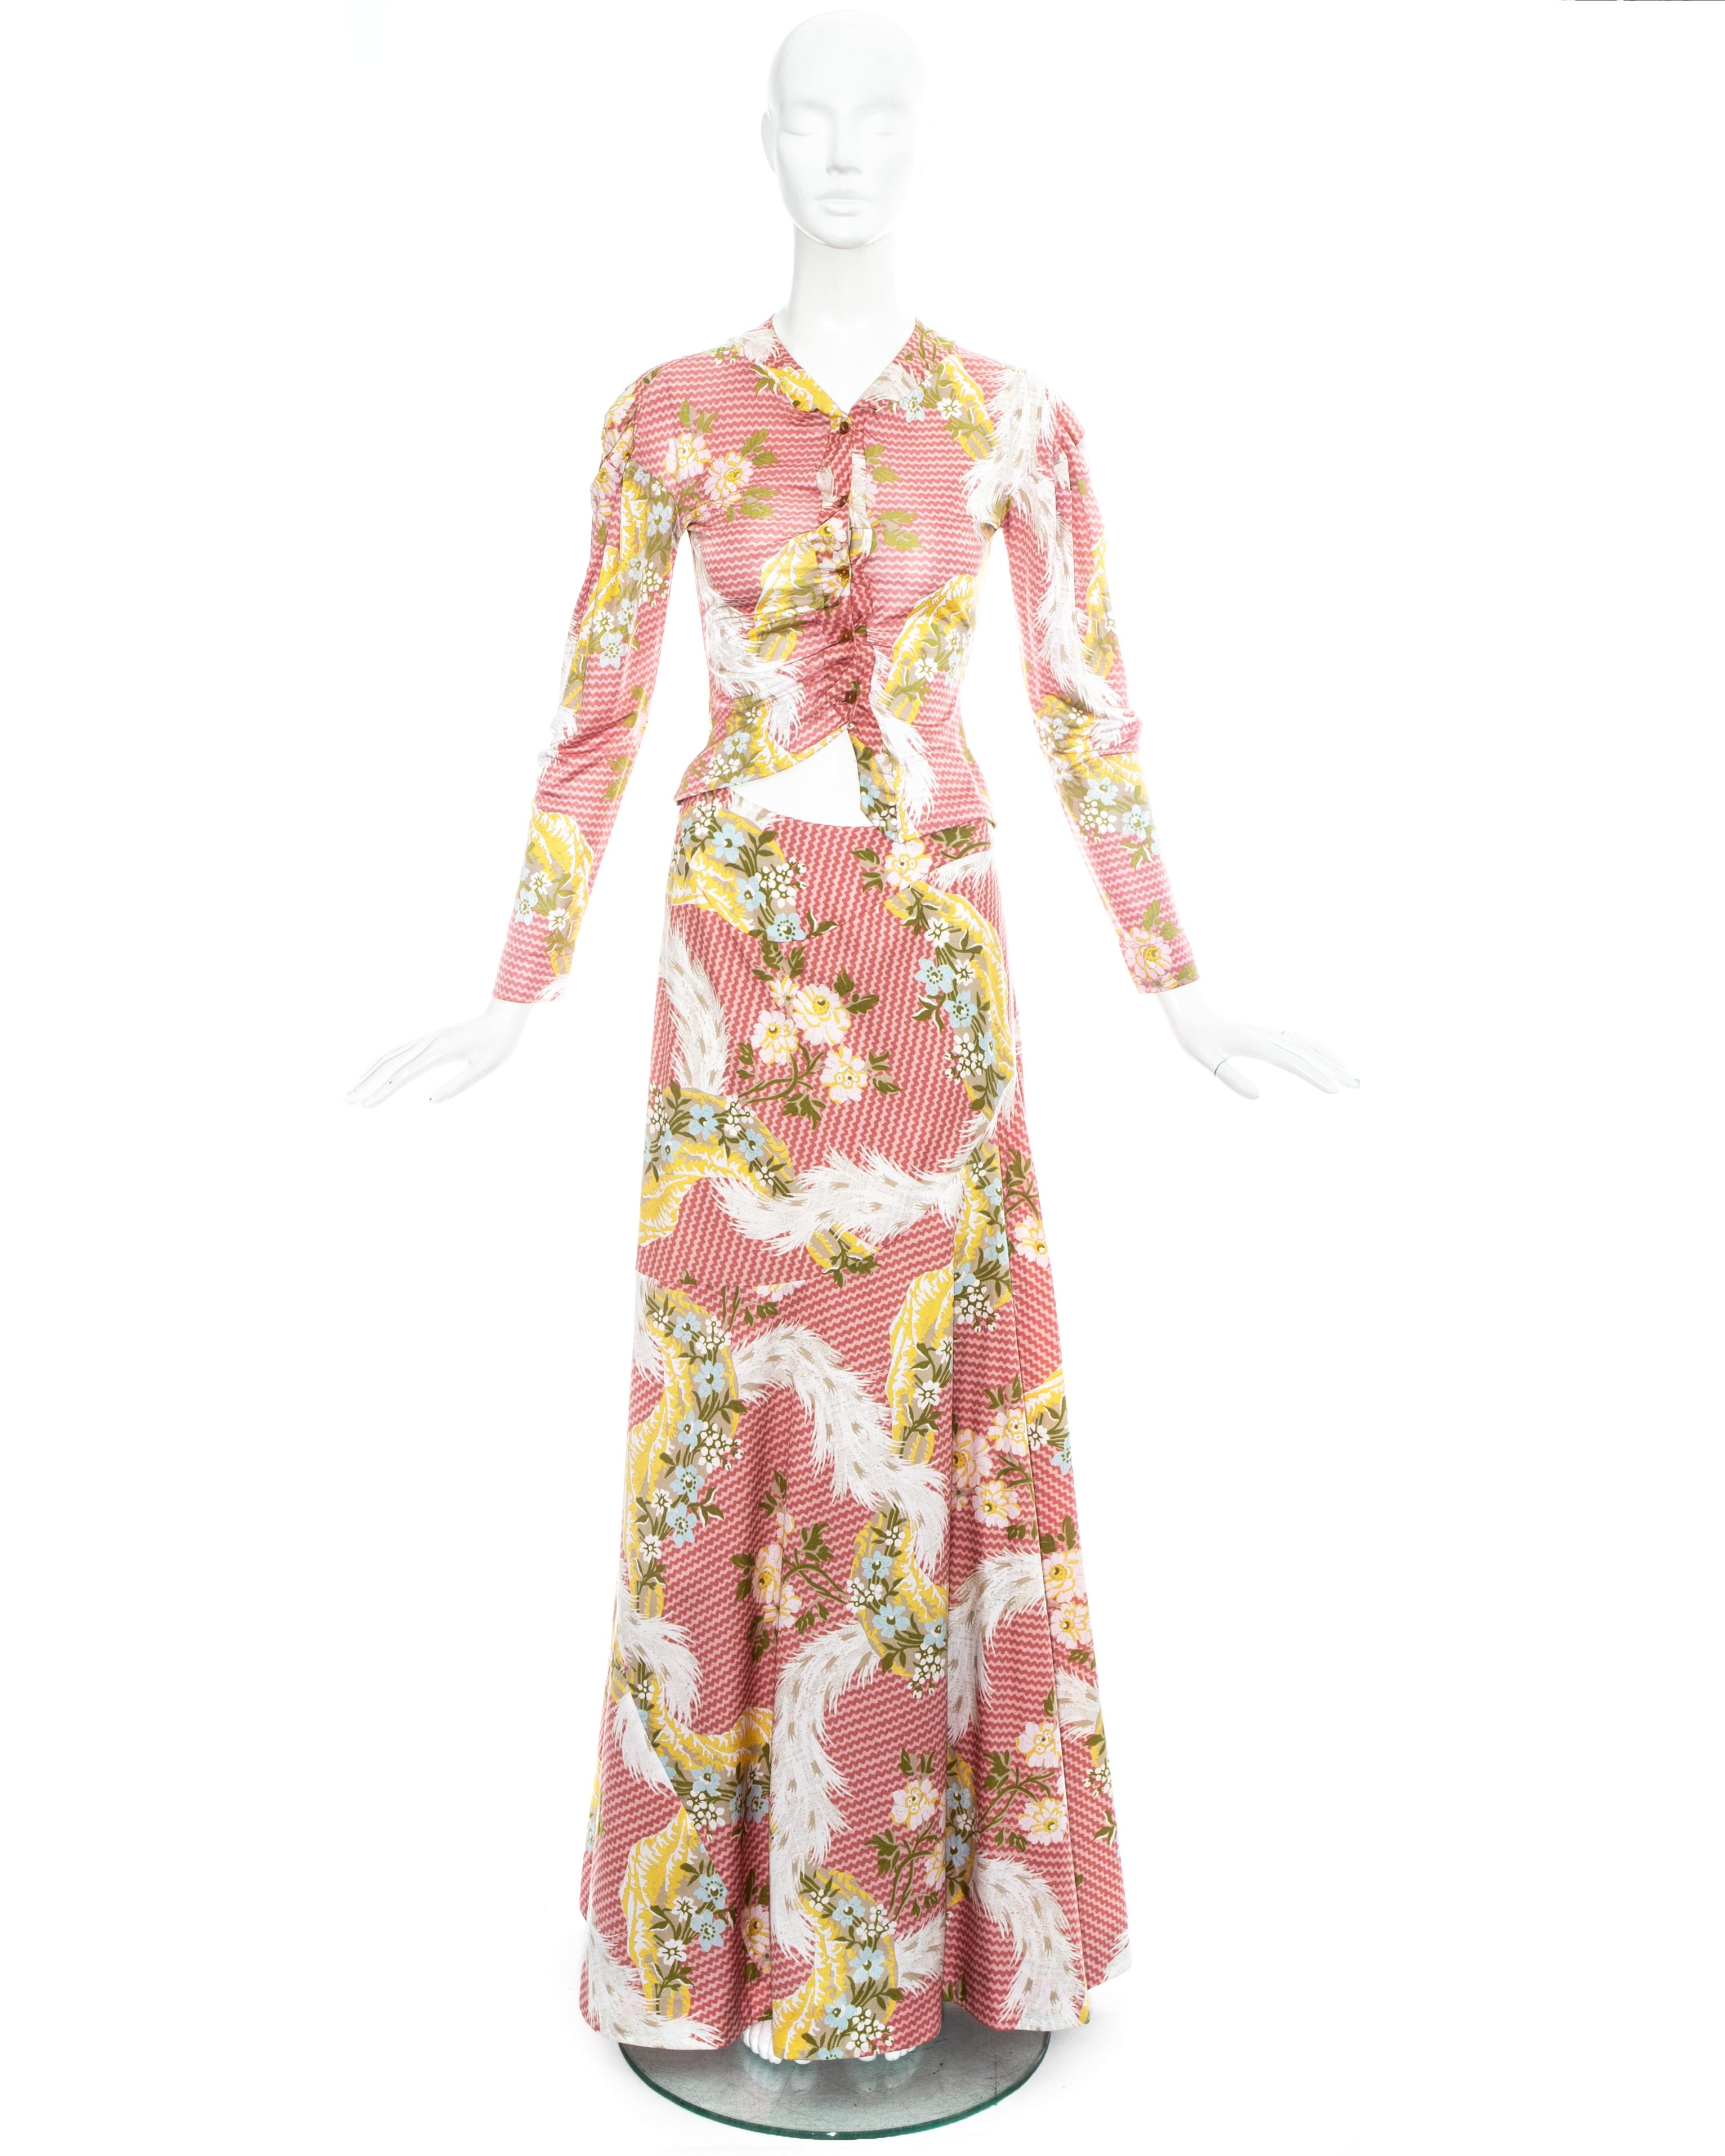 Ensemble imprimé floral rose Vivienne Westwood. Jupe longue et chemisier drapé à la coupe asymétrique.

Printemps-été 2001